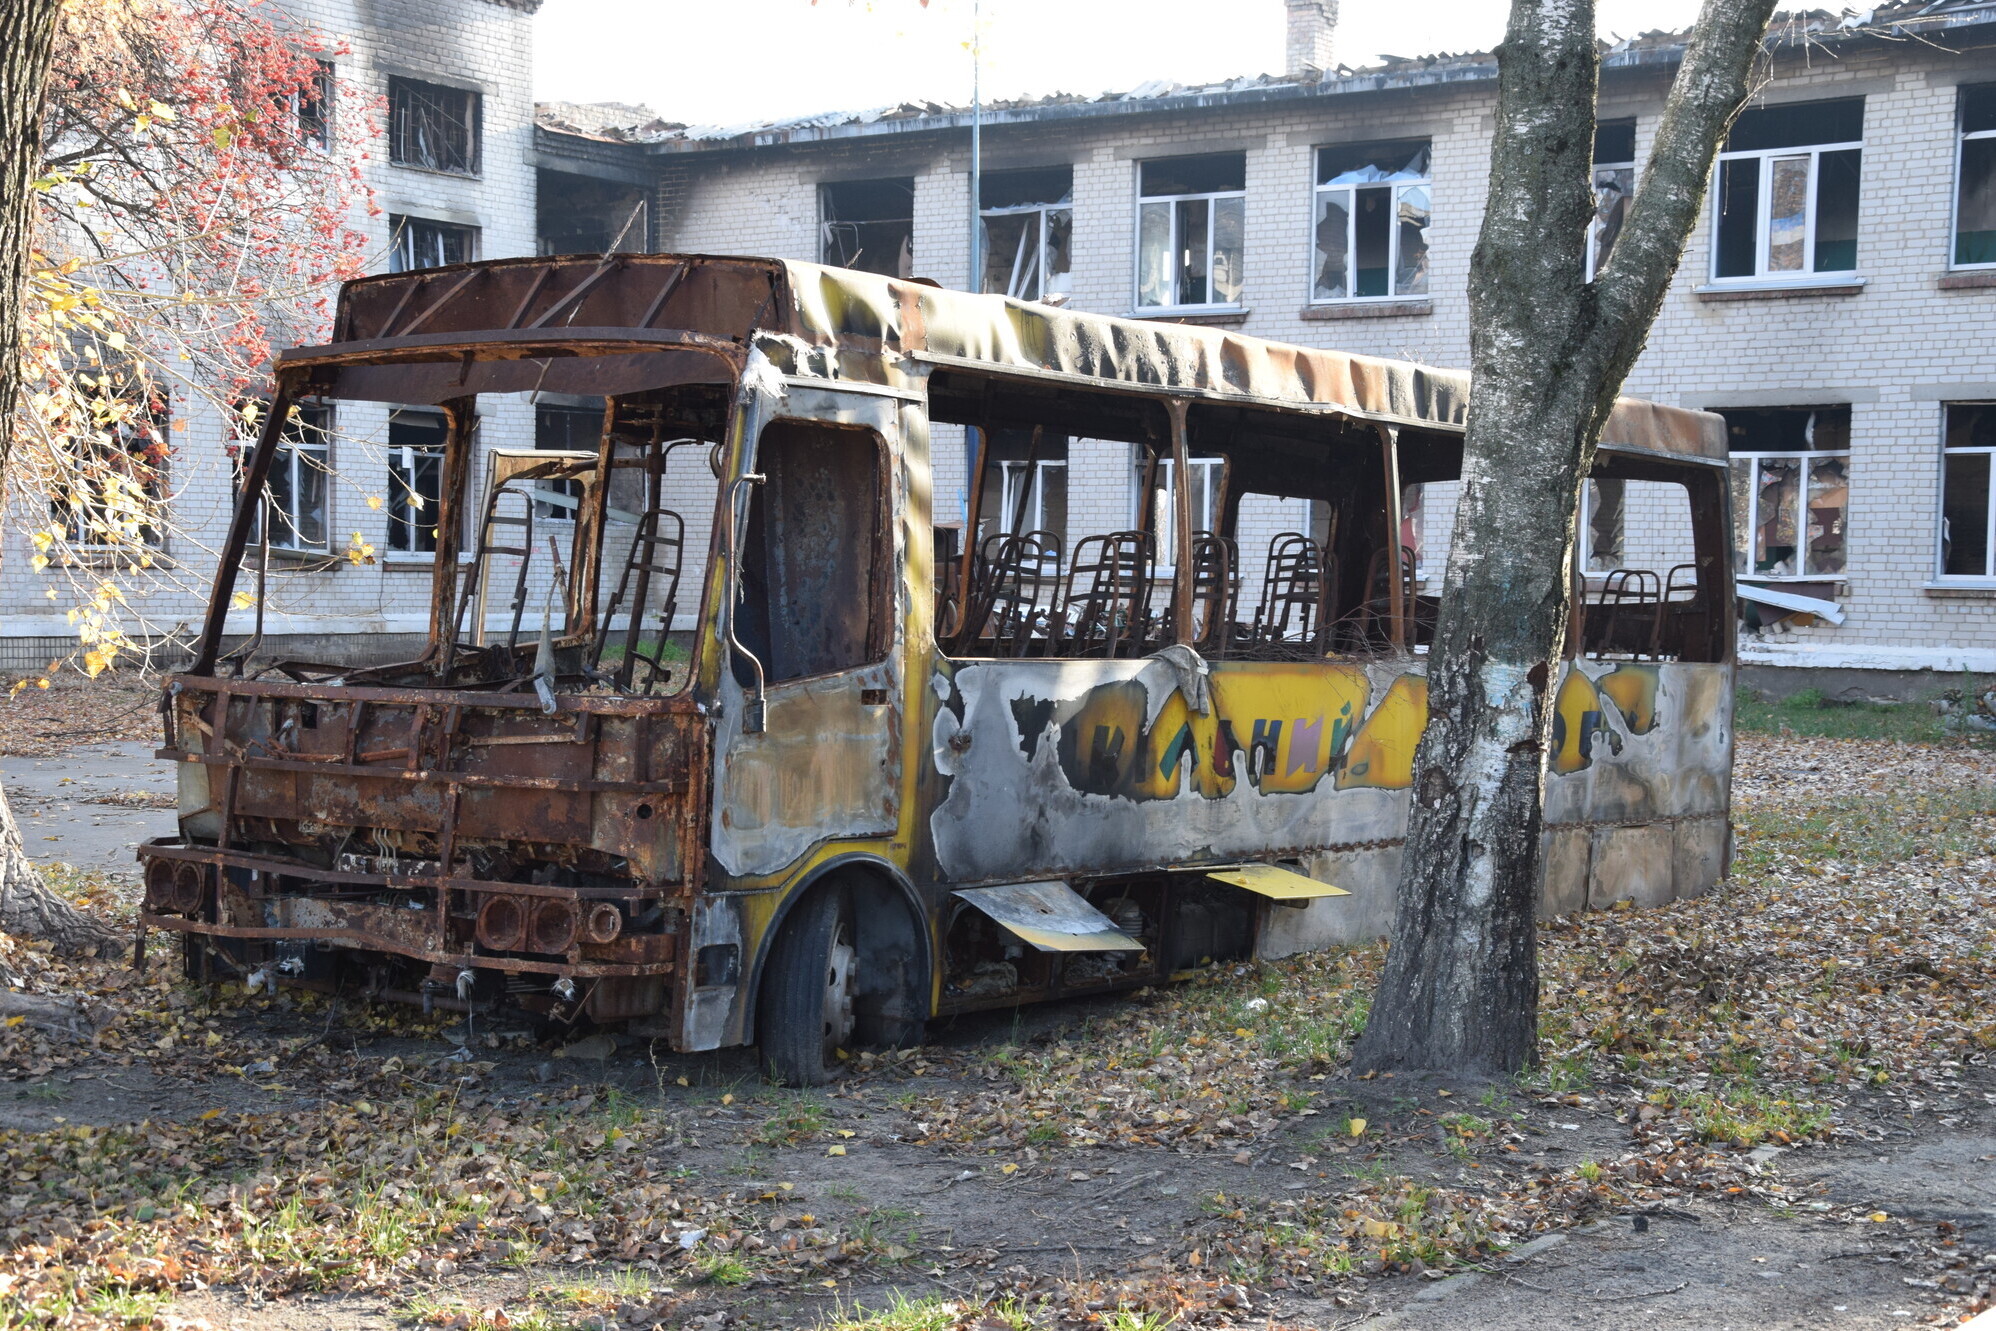 Vom Krieg zerstörter Schulbus in der Ukraine